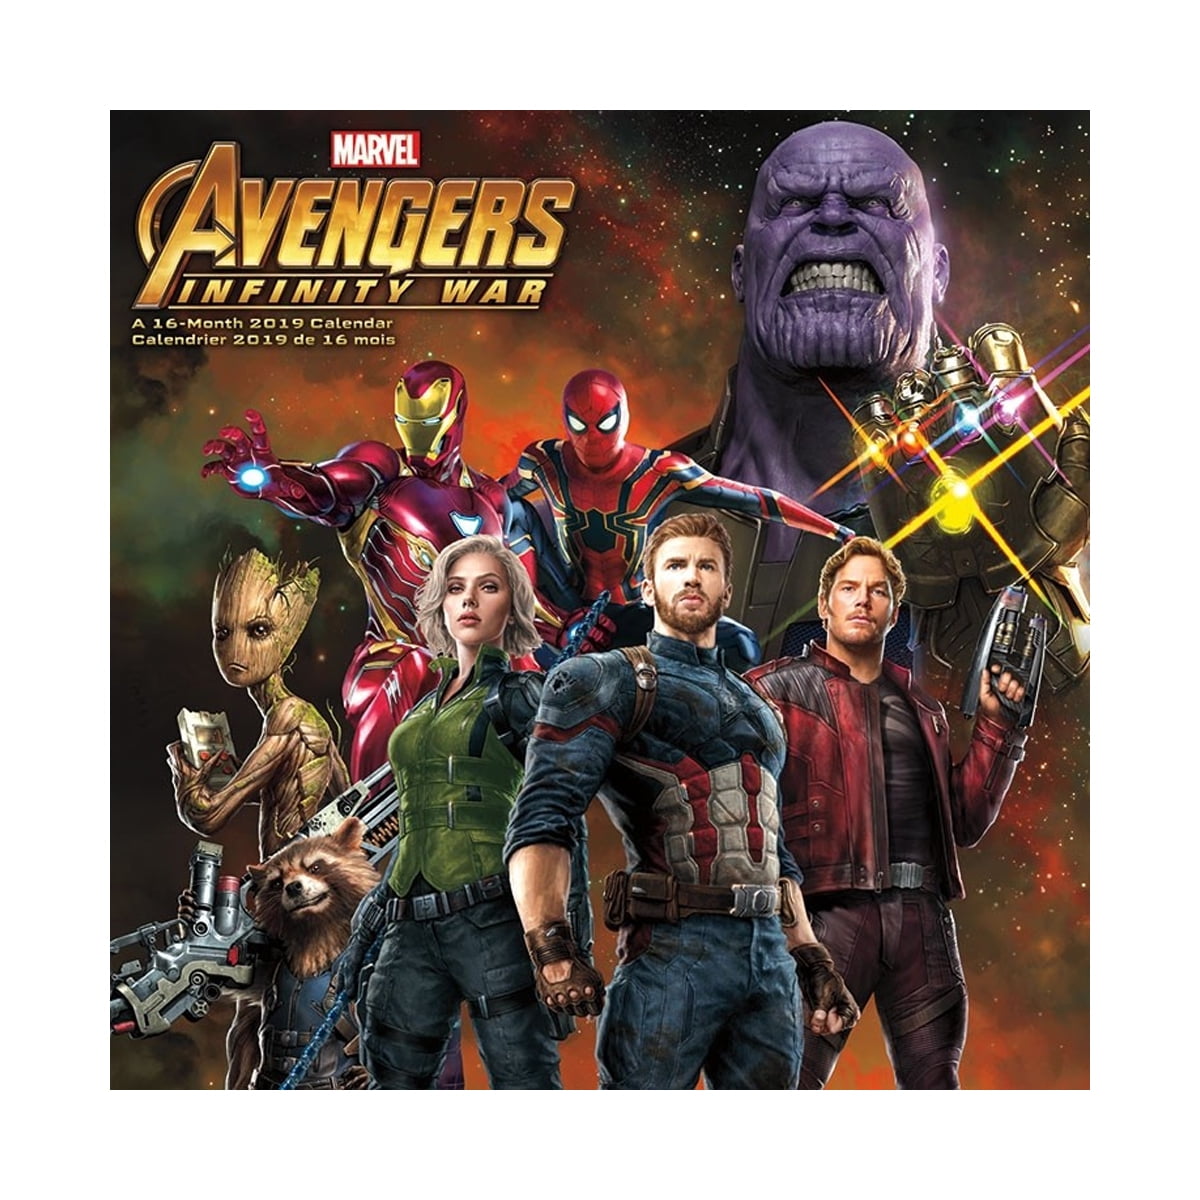 Avengers Infinity War 16 Month 2019 Wall Calendar Marvel